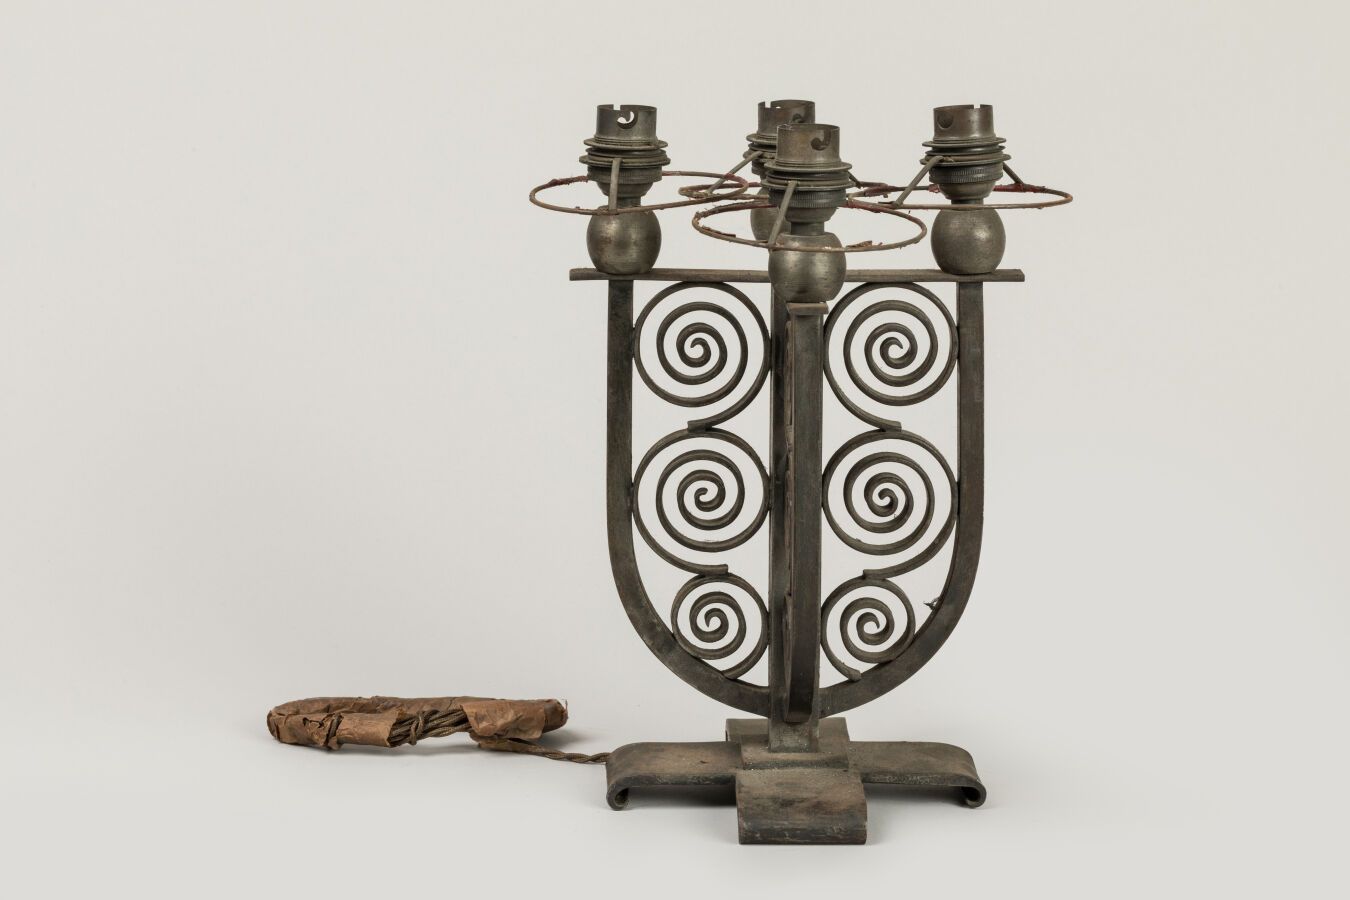 Null 布兰特-埃德加（1880-1960 年）。1925-30 年的作品。装饰艺术风格的锻铁灯座，四个环形灯臂由全拱支撑，饰有镂空卷轴图案。
H.28 厘米